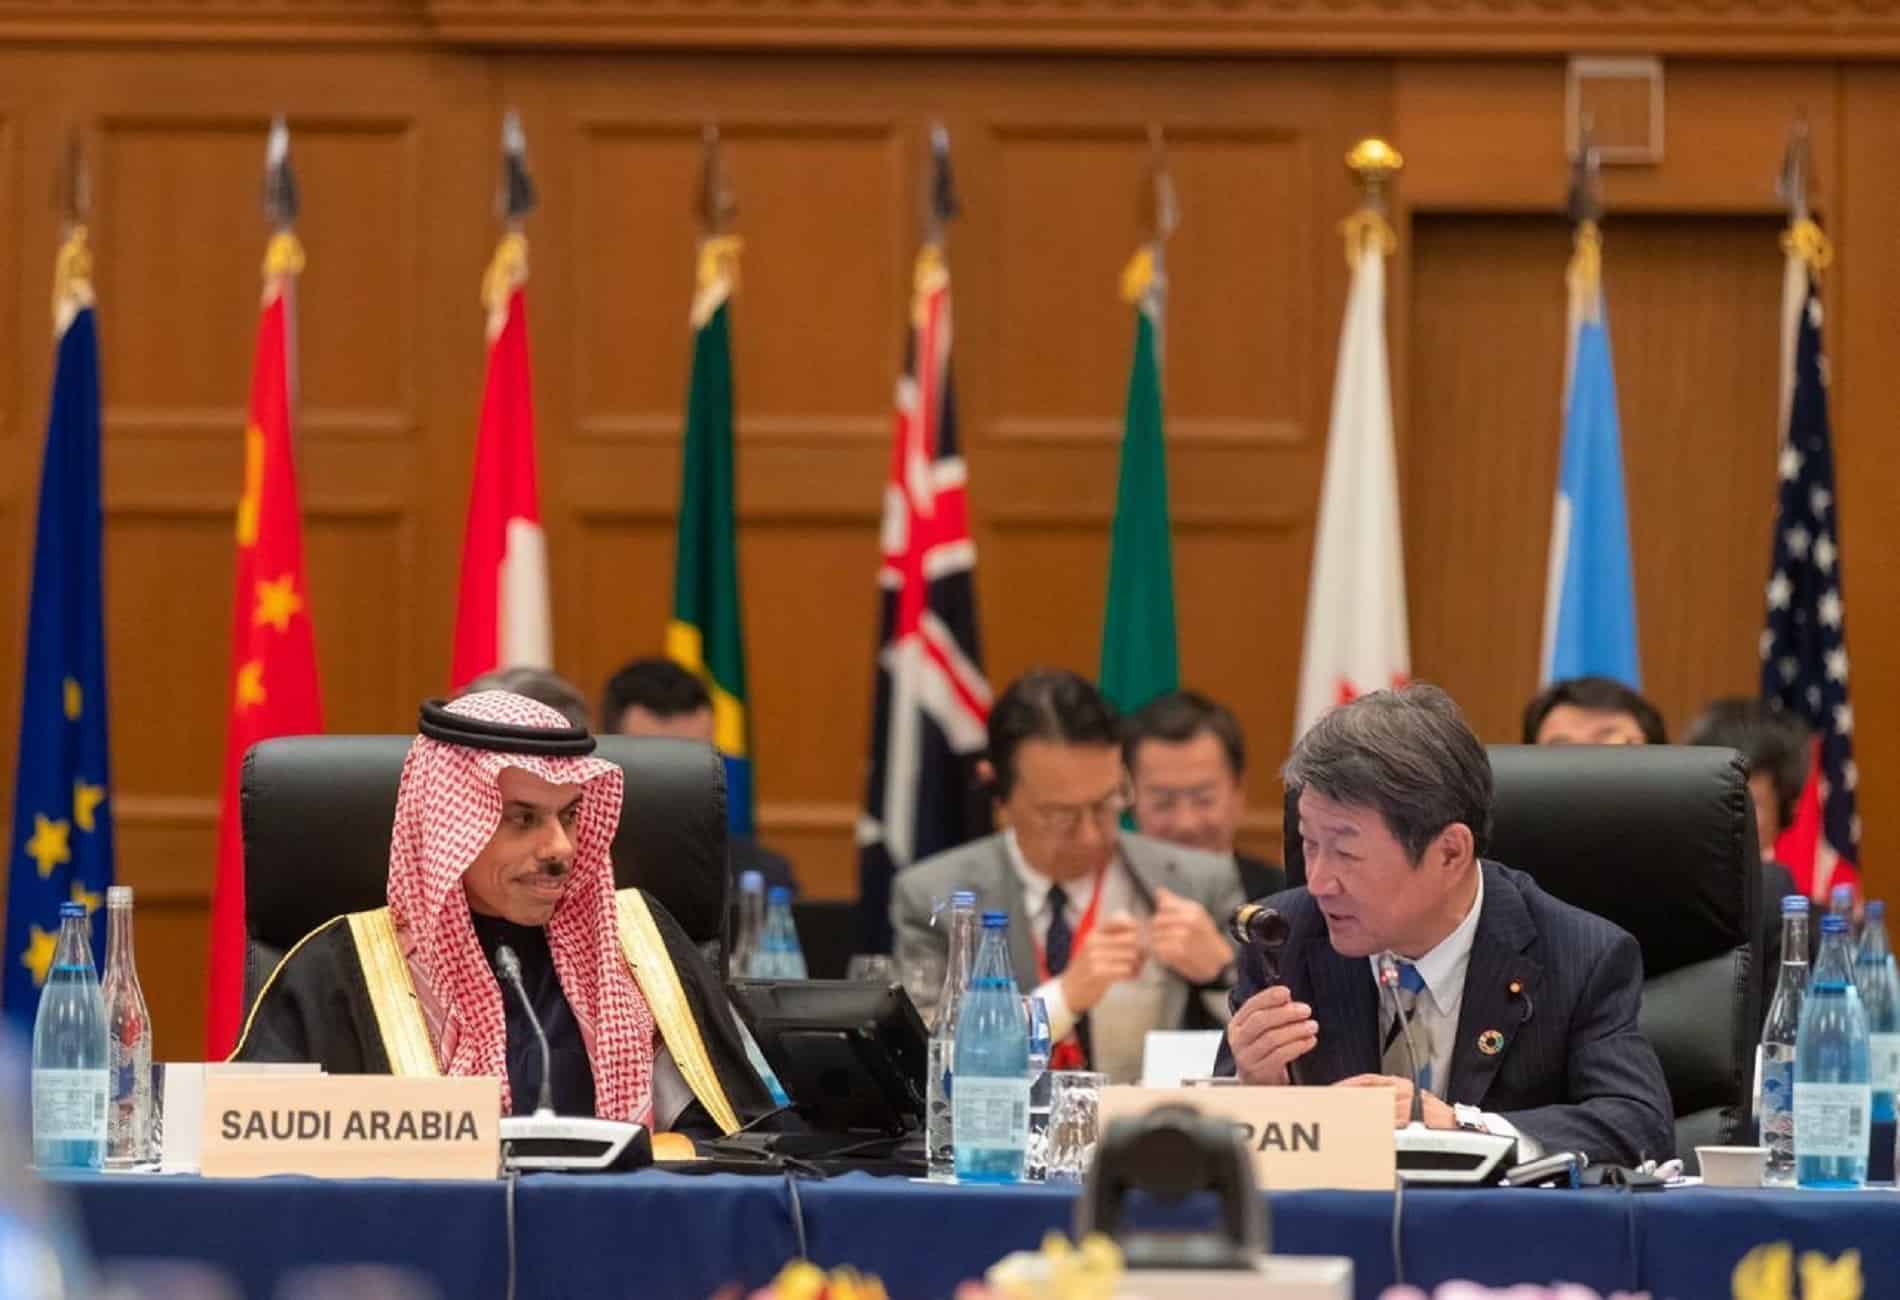 السعودية تتسلم رئاسة مجموعة العشرين لعام 2020